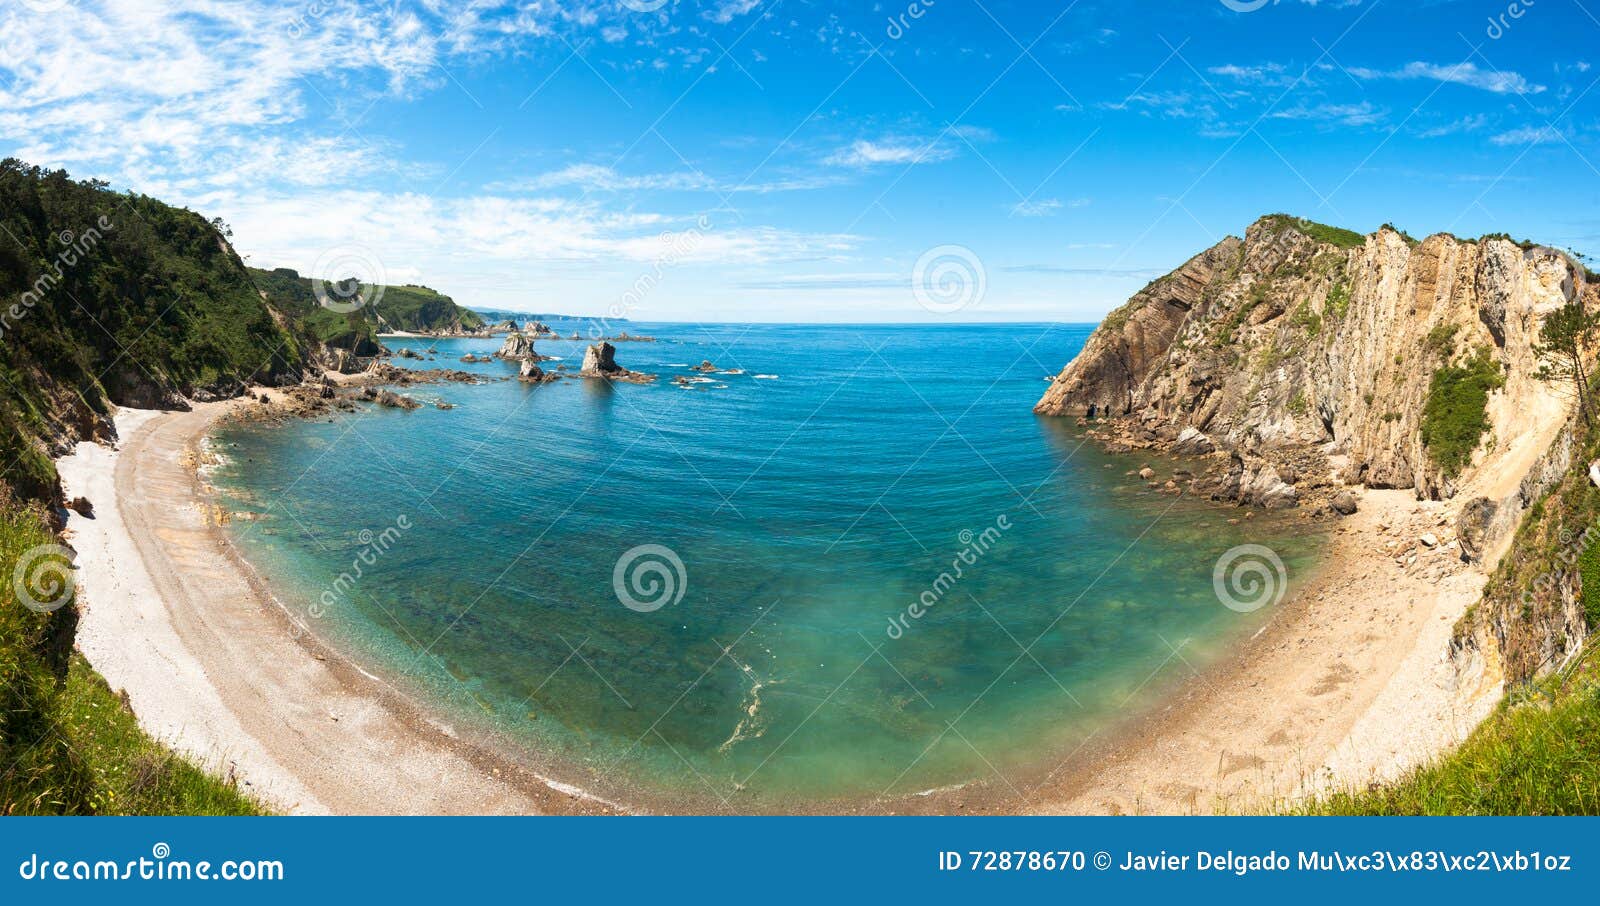 playa del silencio panorama, asturias, spain